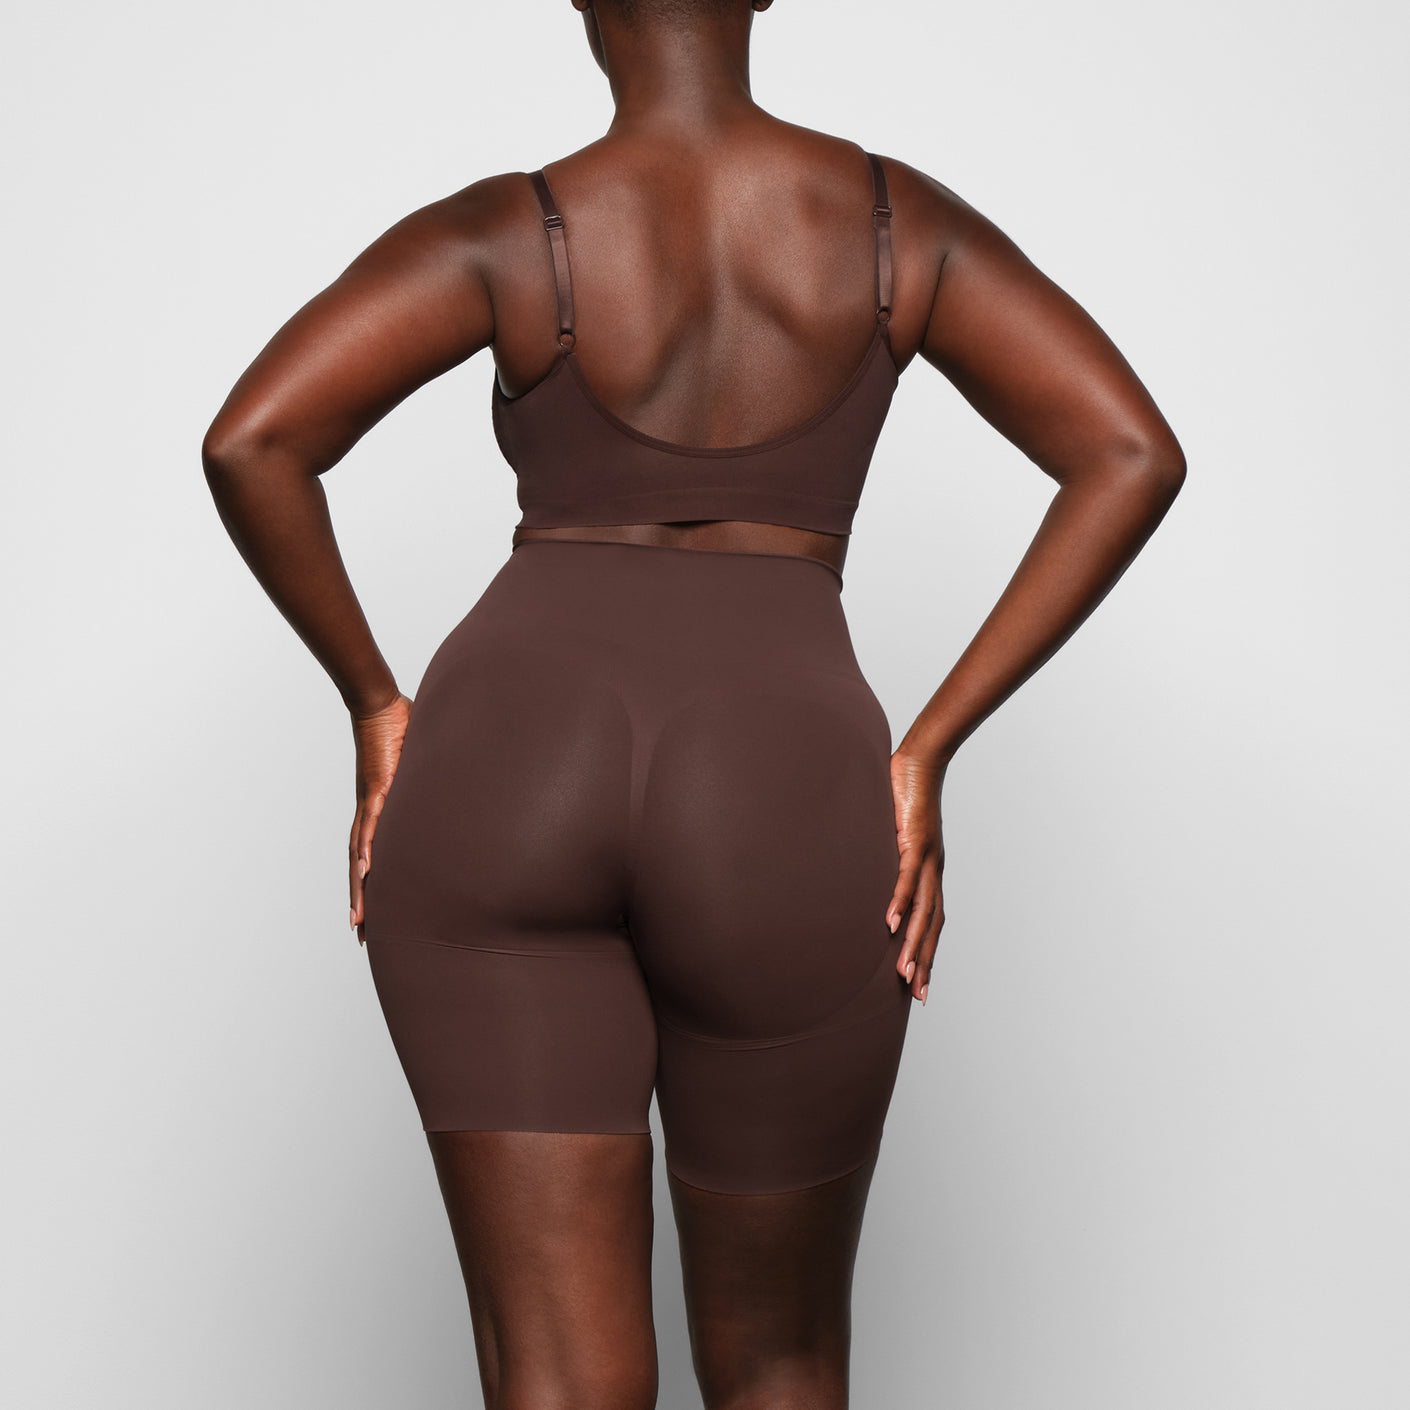 Bbl Shorts Colombia Shaperwear Woman Butt Lifter Skims Underwear